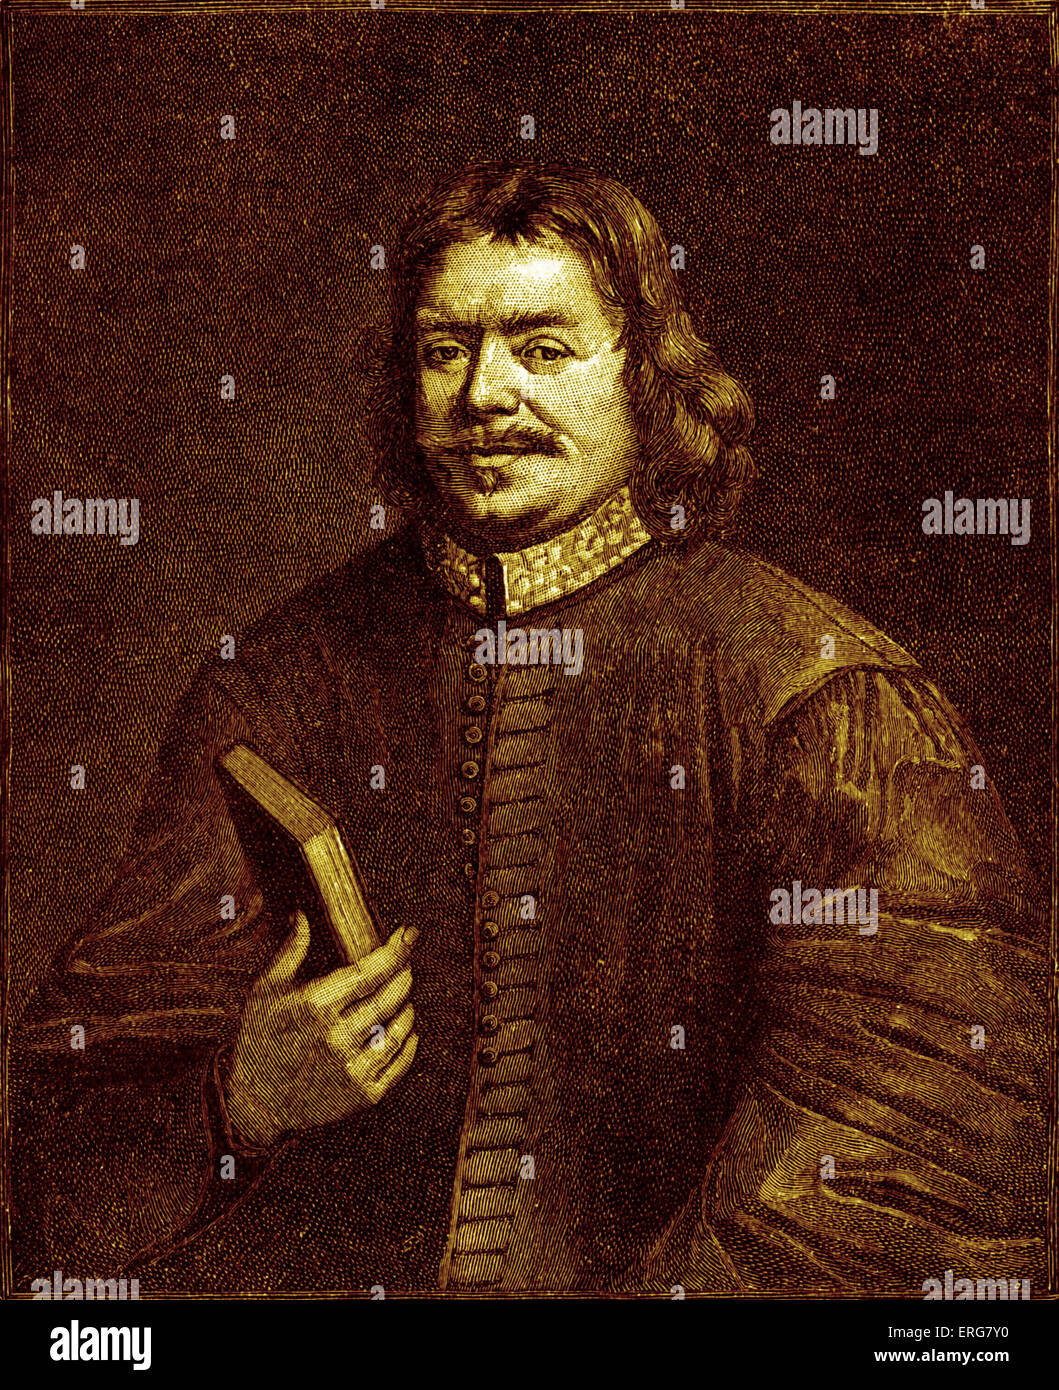 John Bunyan, retrato. John Bunyan: 28 de noviembre de 1628 - 31 de agosto de 1688, el escritor inglés Christian y predicador. Foto de stock